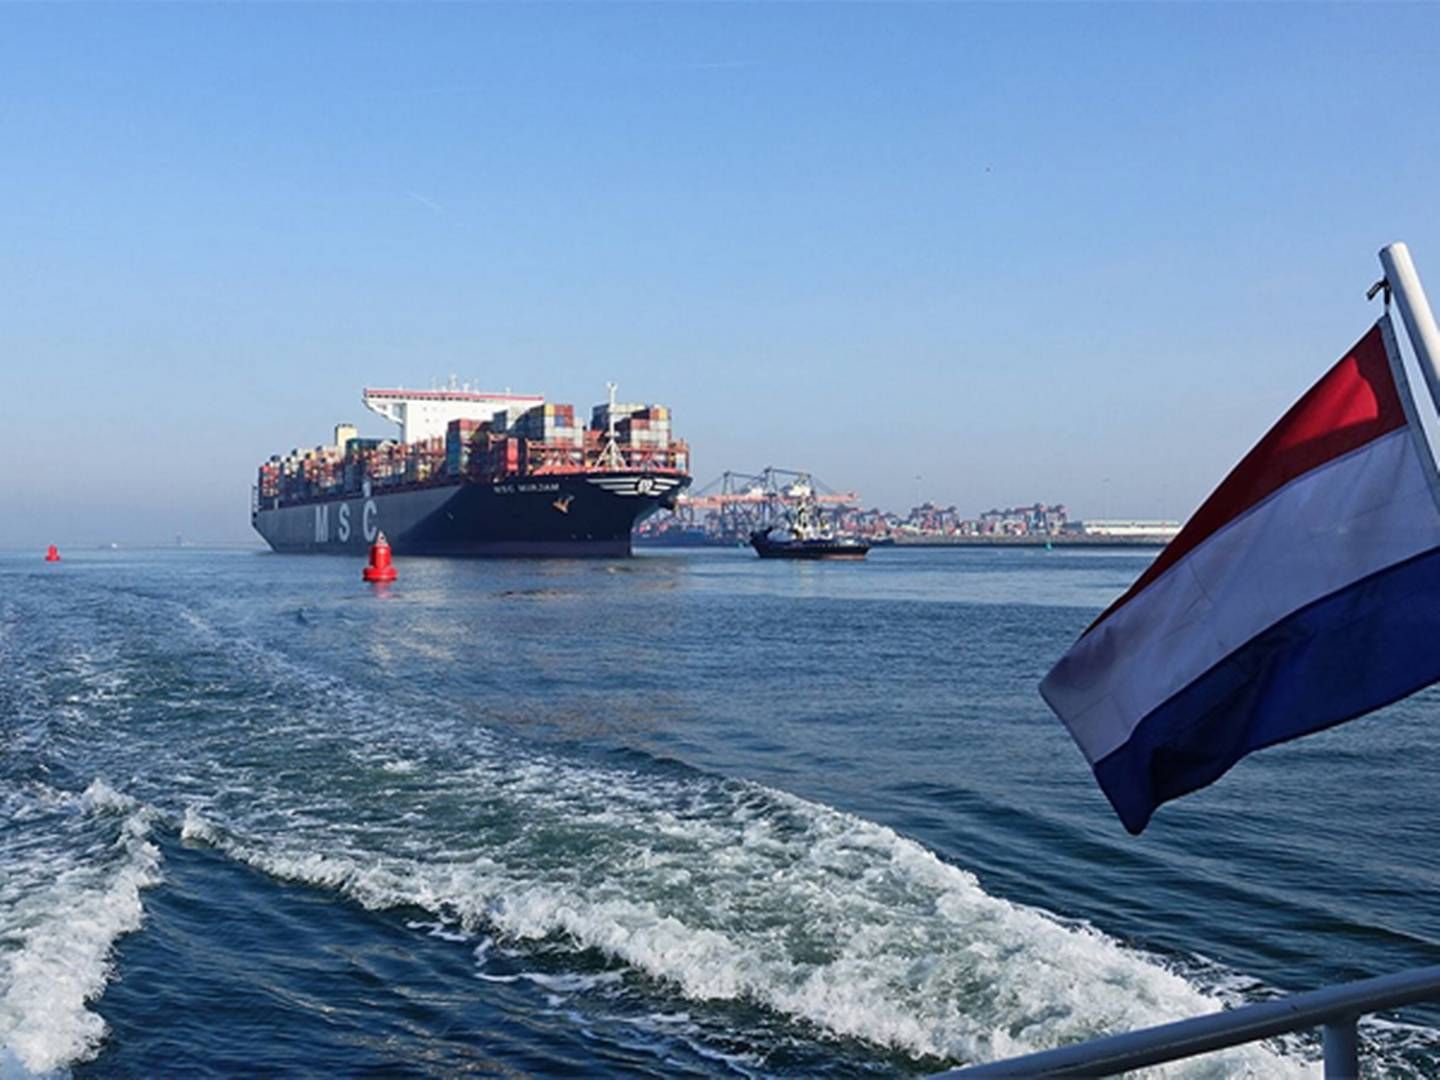 Foto: Port of Rotterdam/Kees Torn